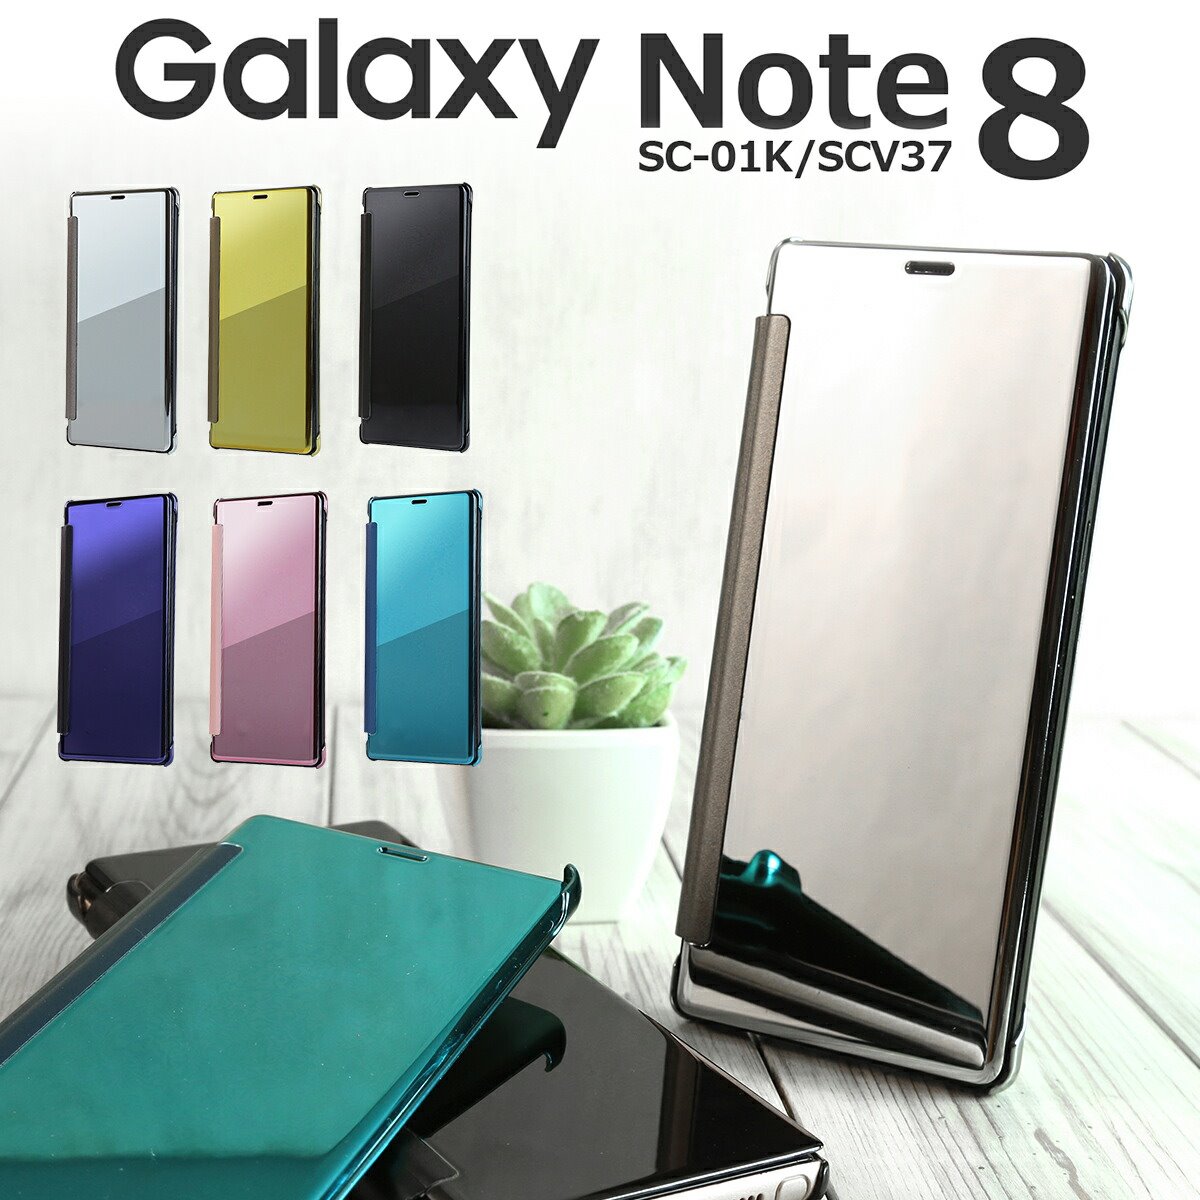  Galaxy Note8 ケース Galaxy Note8 ケース 手帳 Galaxy Note8 カバー Galaxy Note8 sc-01k ケース スマホケース 韓国 SC-01K SCV37 スマホ カバー 半透明手帳型ケース ハードケース オシャレ シルバー 薄い ミラー 鏡 シンプル sale